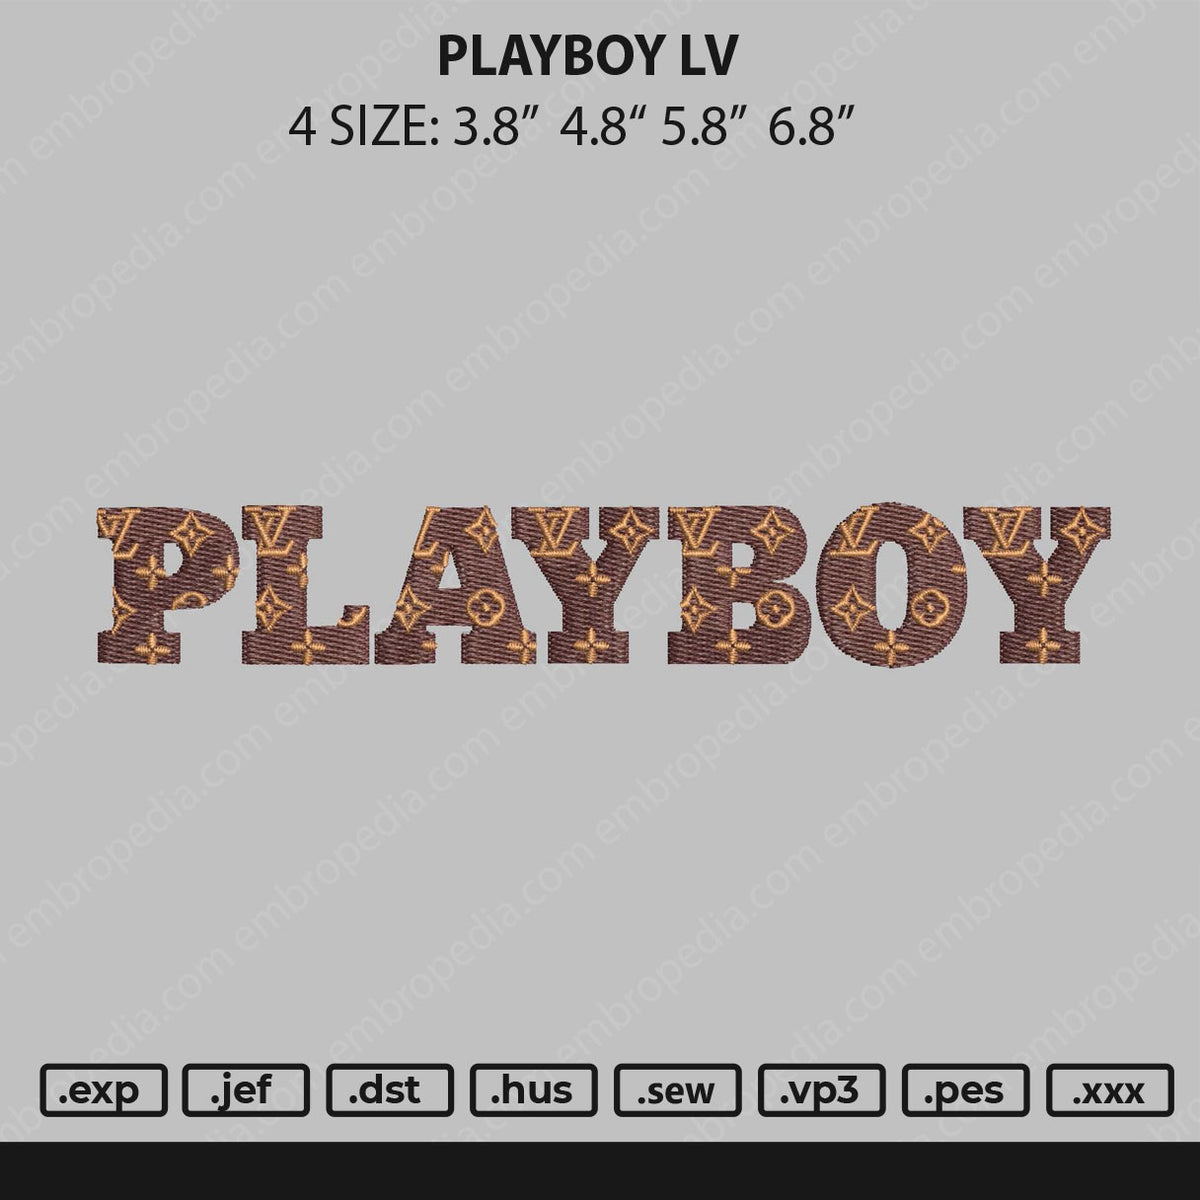 Playboy LV